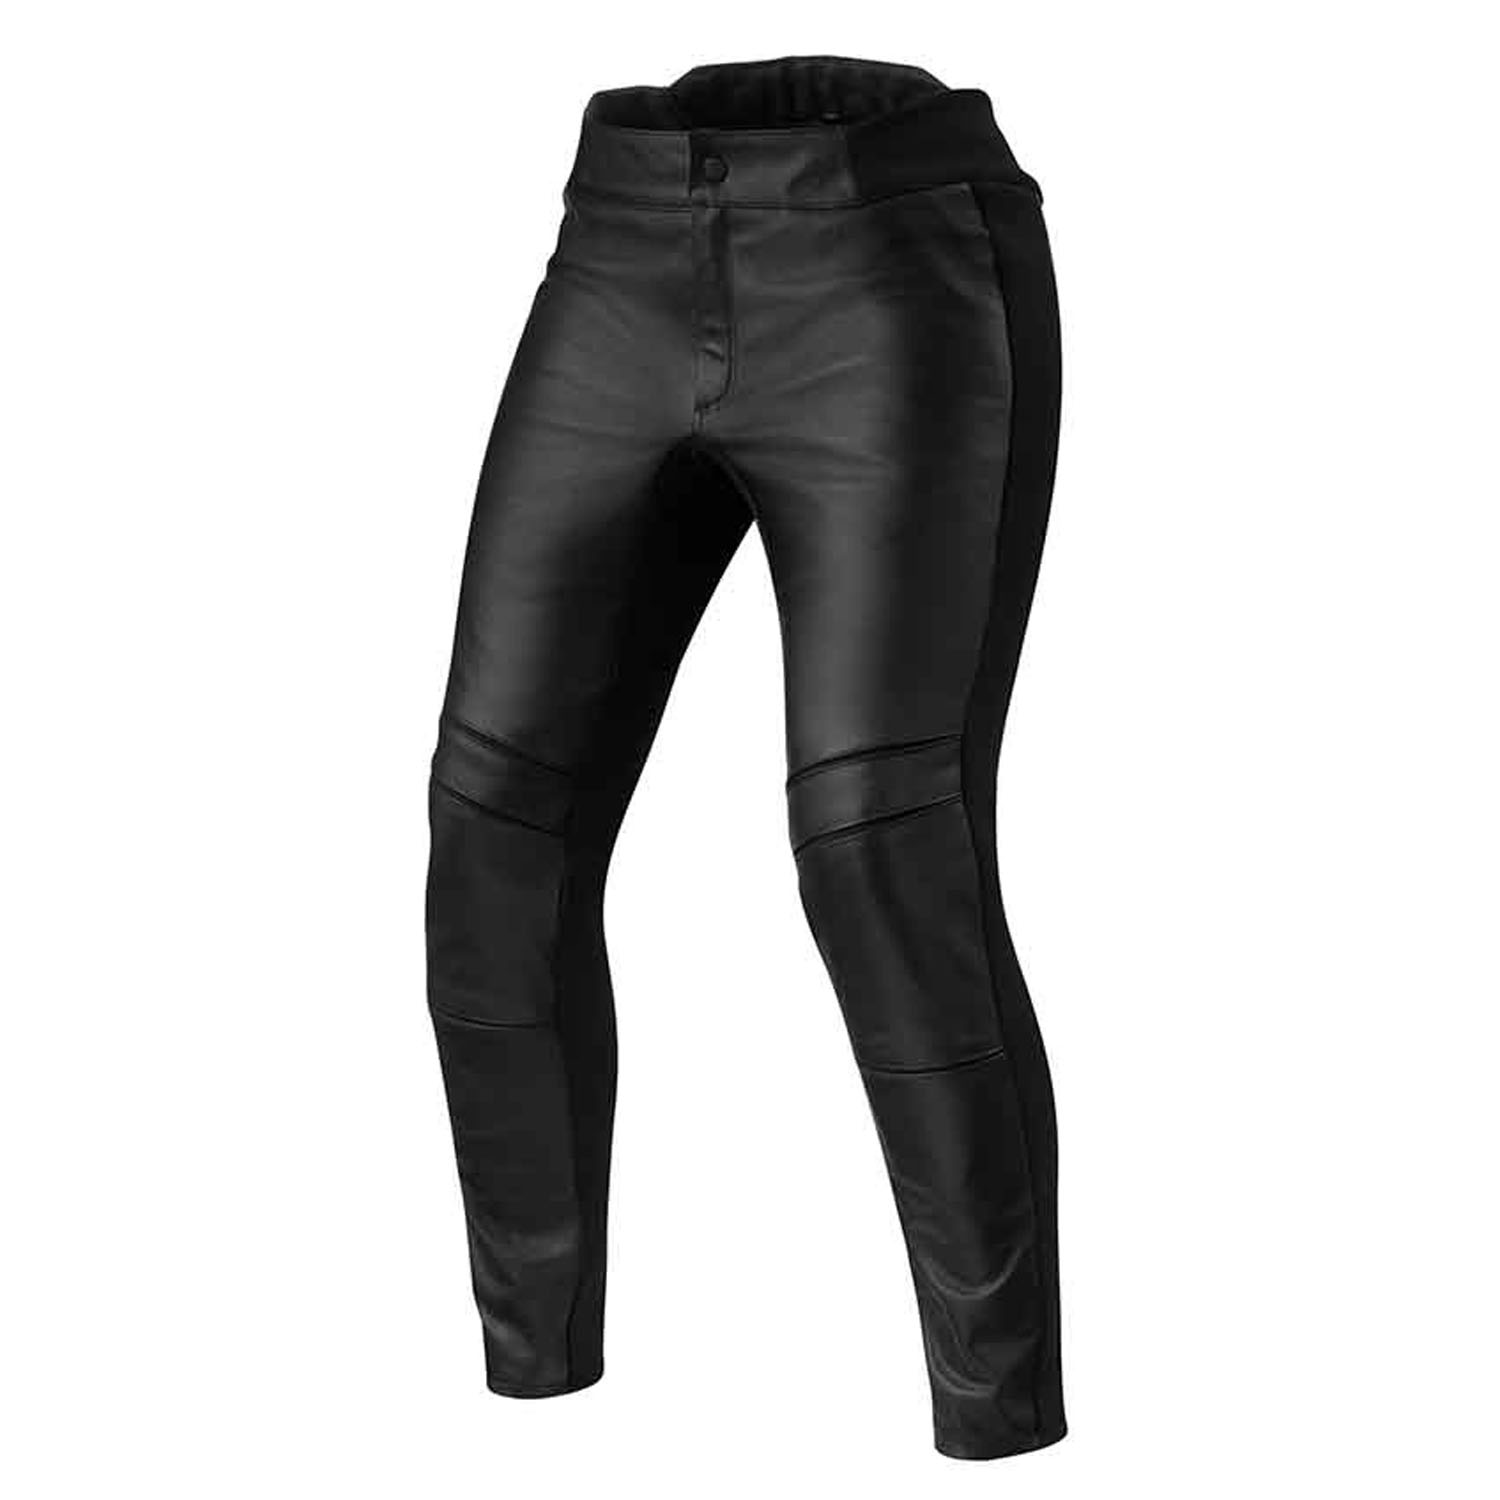 Image of REV'IT! Maci Ladies Black Short Motorcycle Pants Size 42 EN